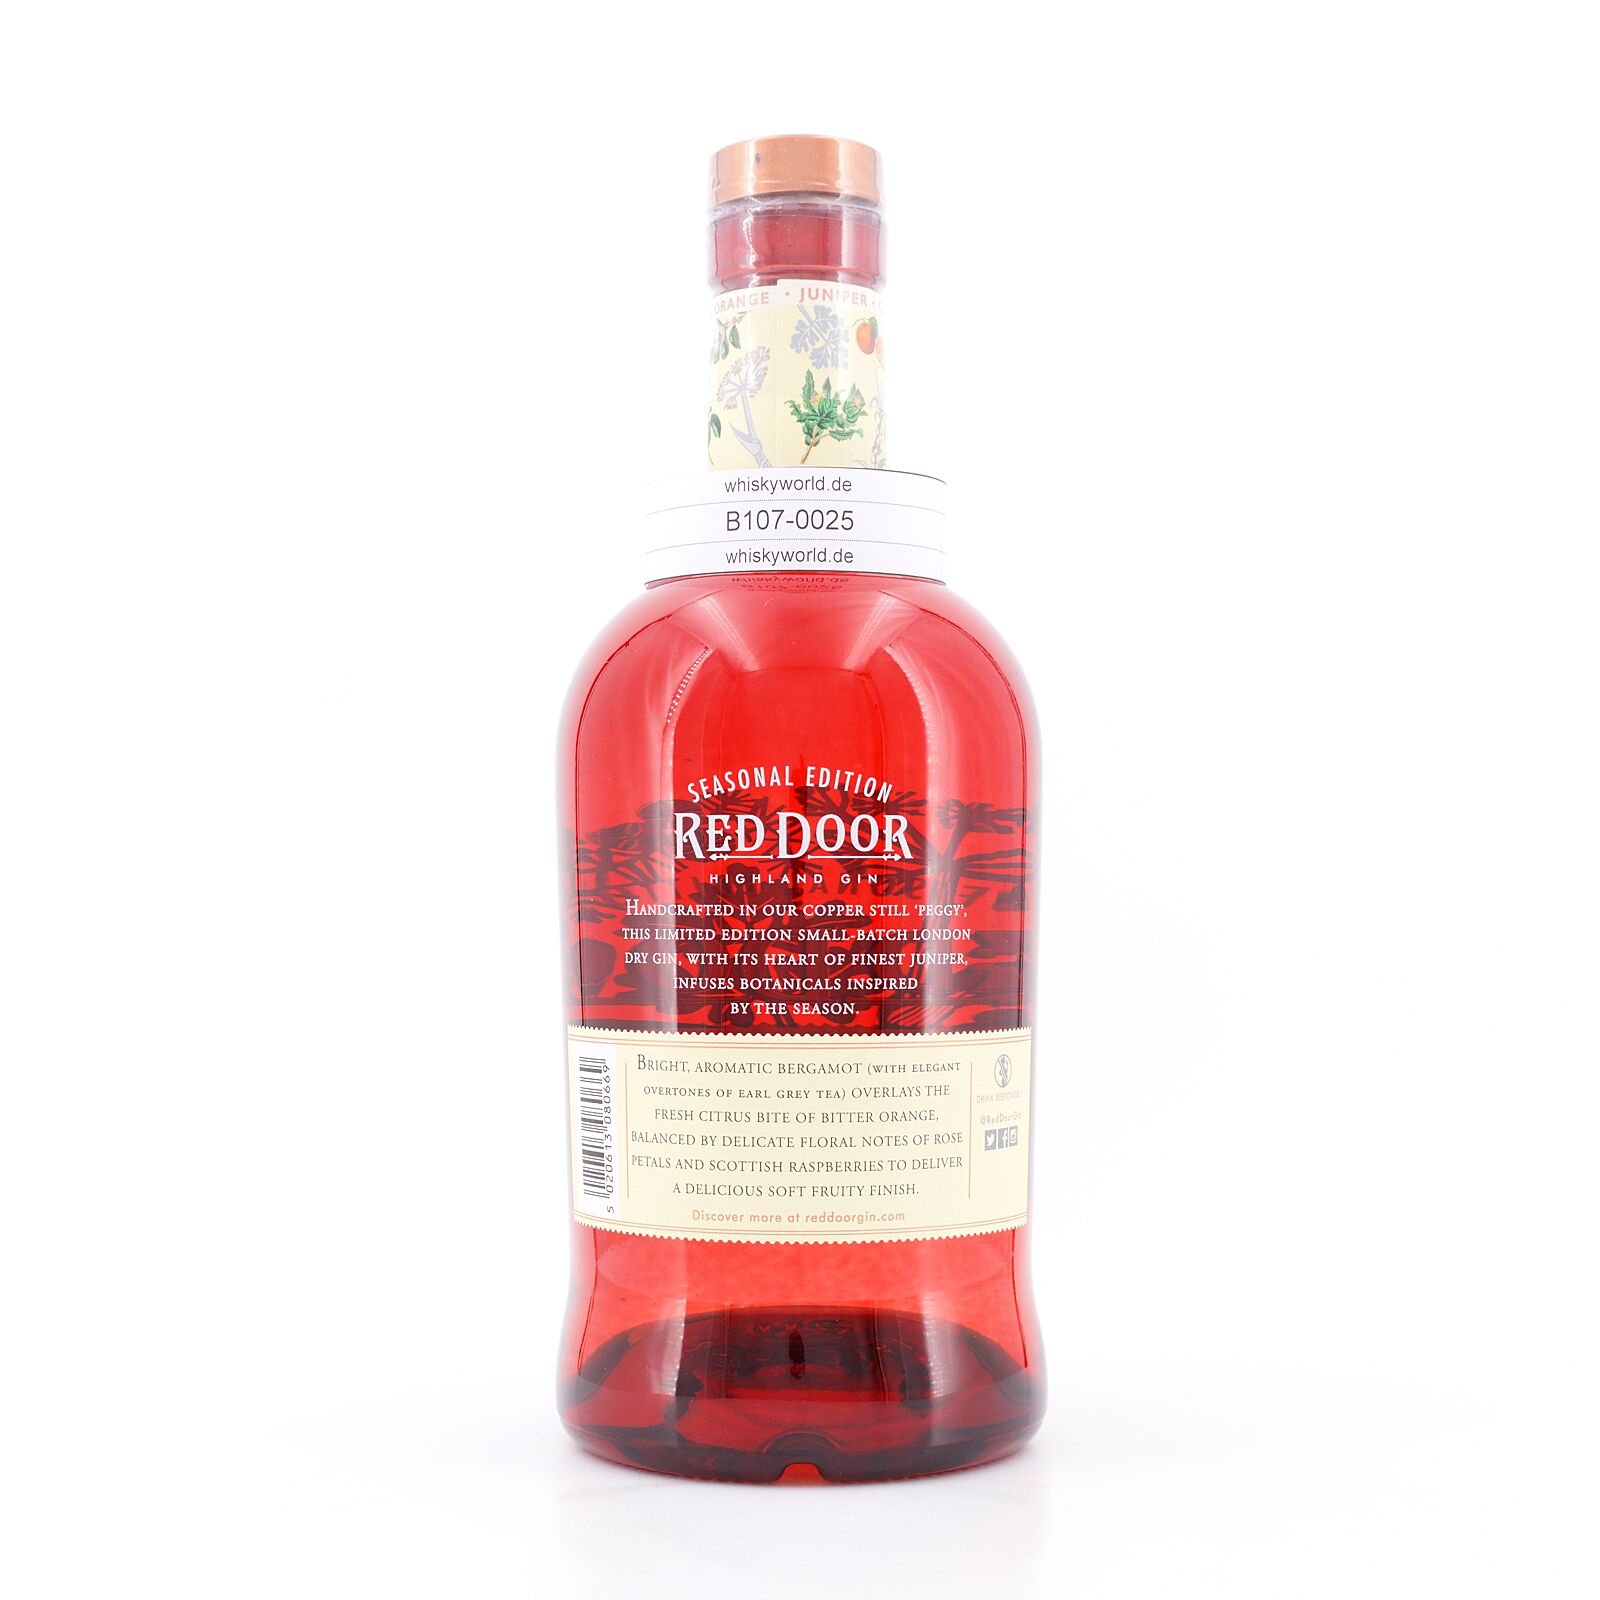 Benromach Red Door Highland Gin 45.0% Liter/ 0,70 vol Edition Summer